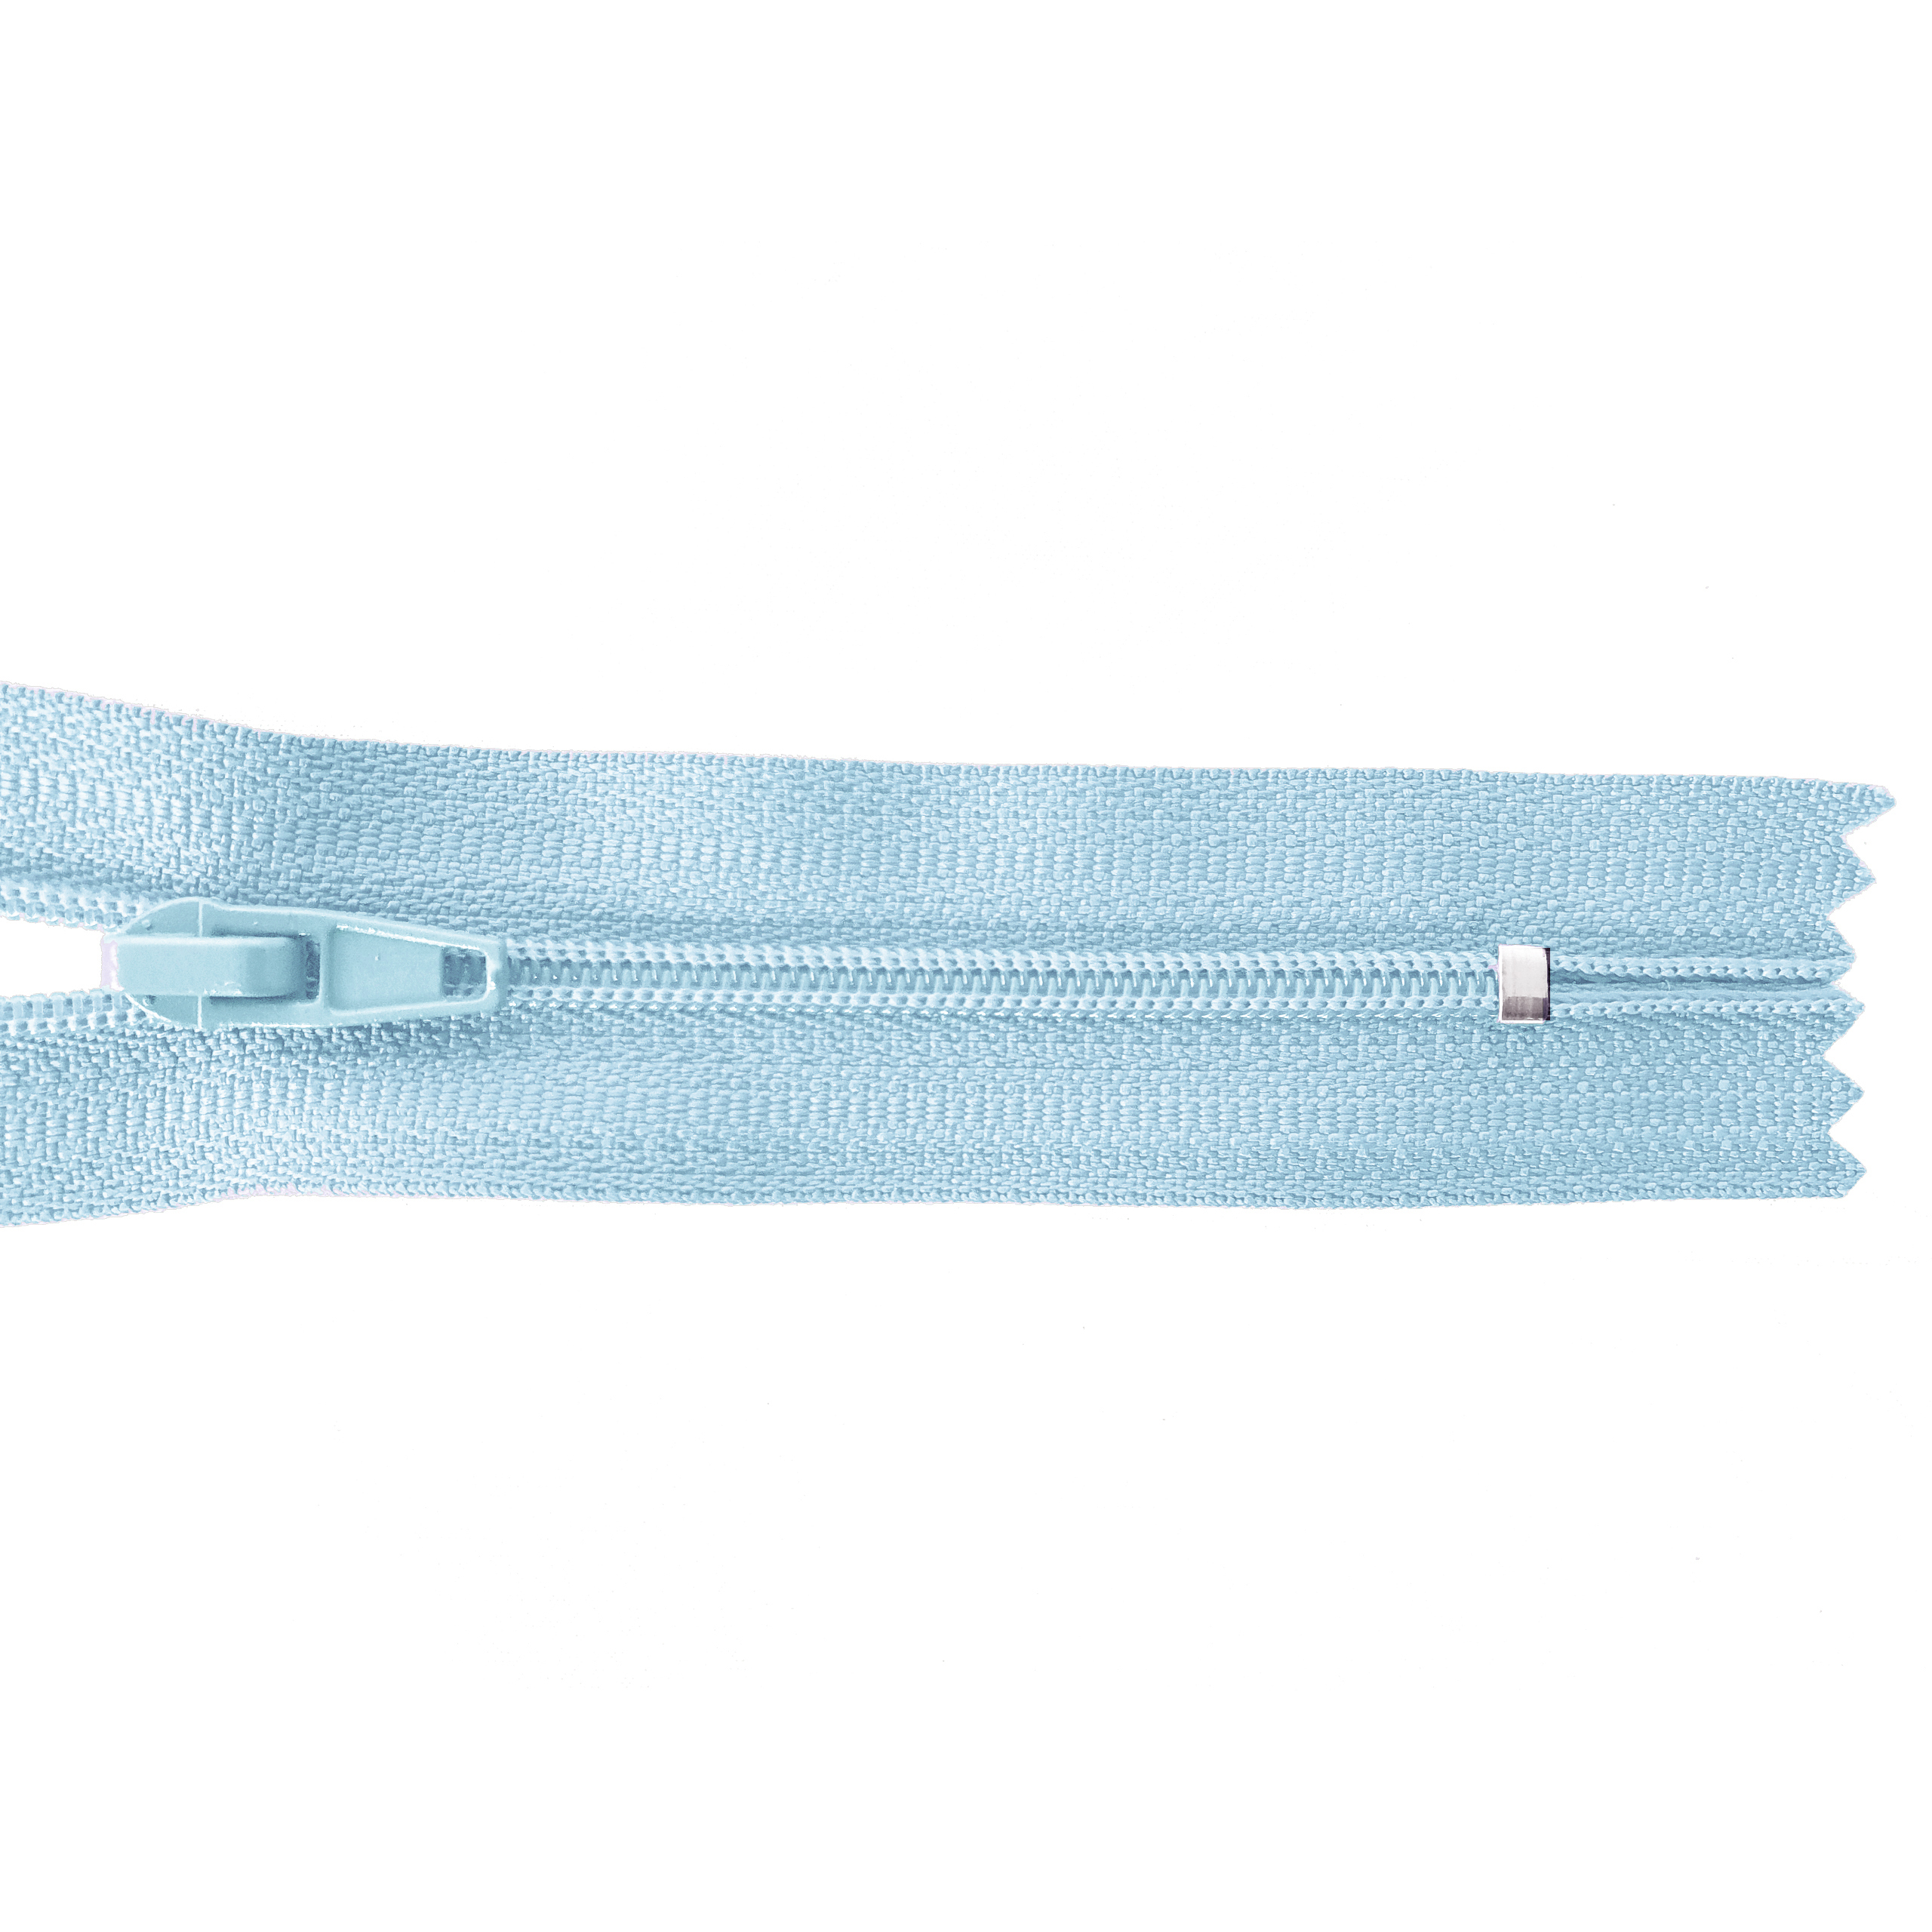 Reißverschluss 20cm, nicht teilbar, PES-Spirale fein, gardeniablau (blassblau), hochwertiger Marken-Reißverschluss von Rubi/Barcelona